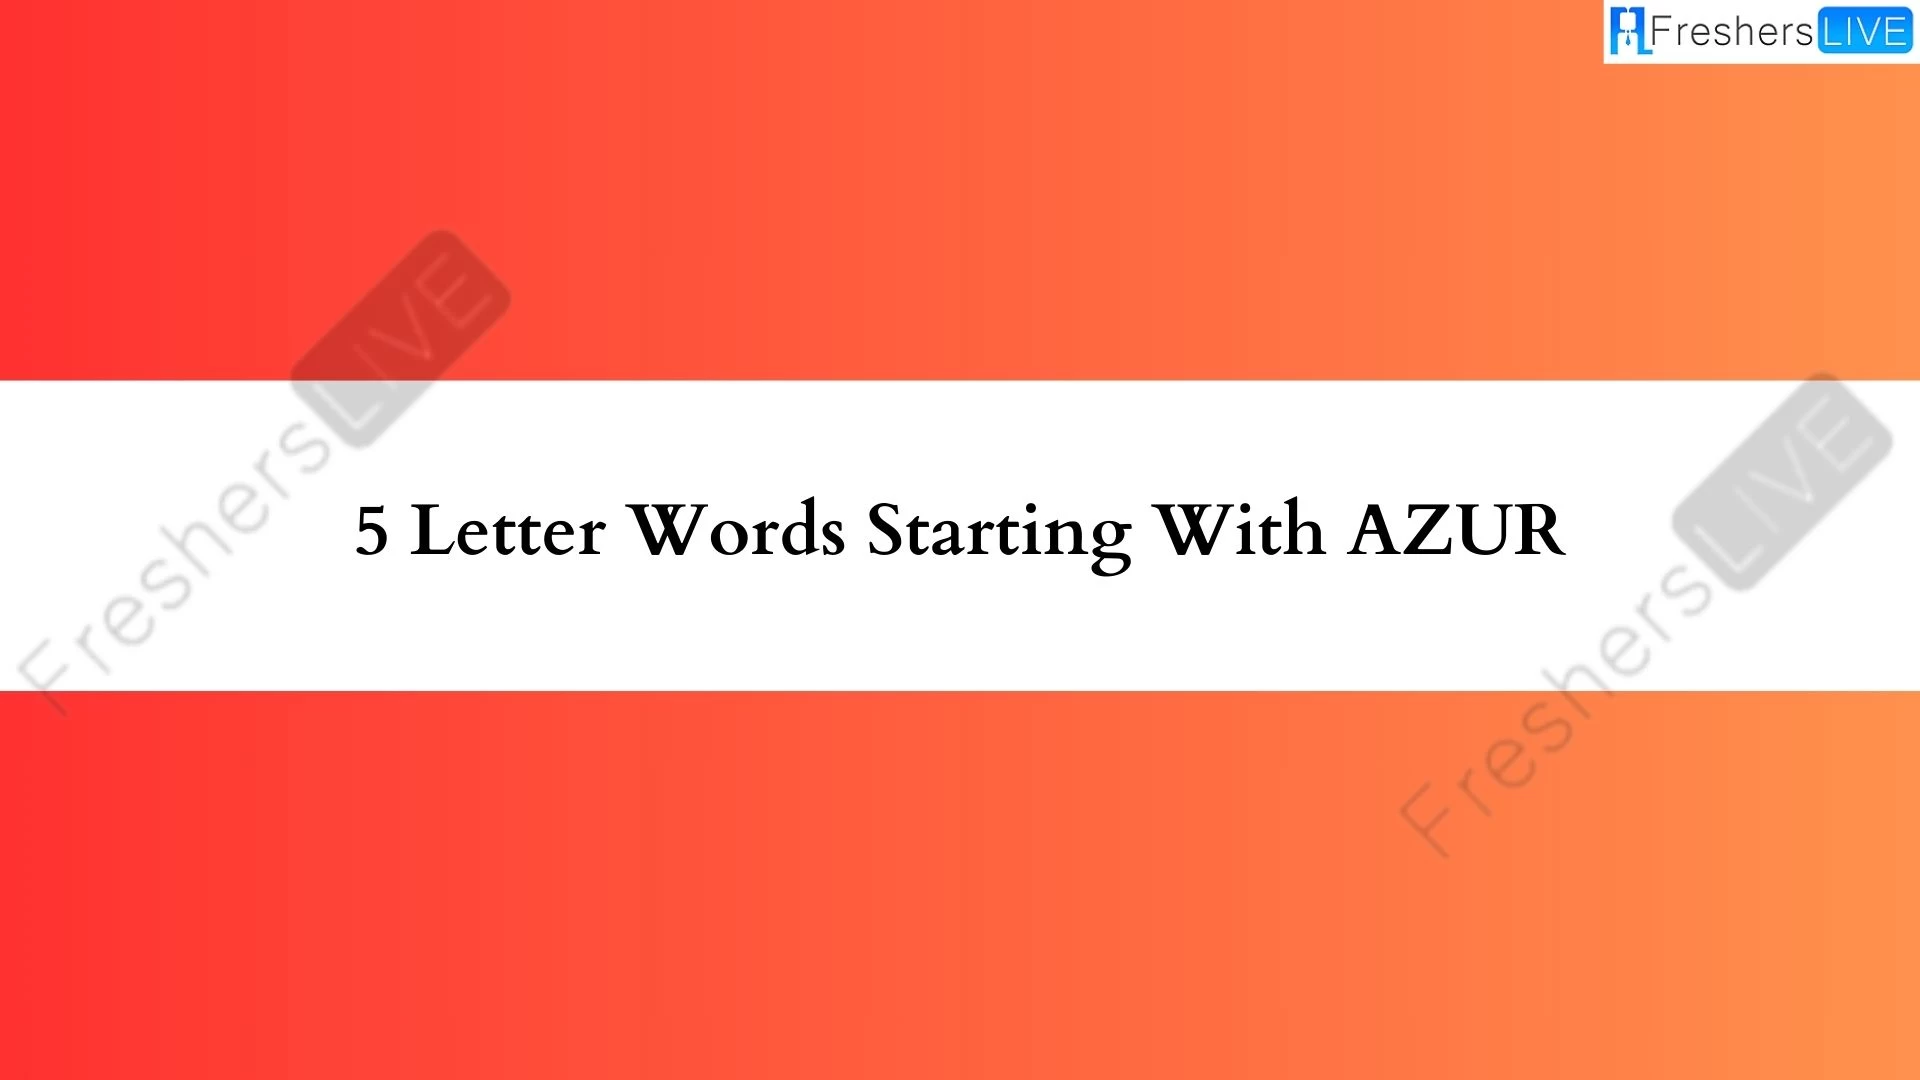 Palabras de 5 letras comenzando con AZUR.